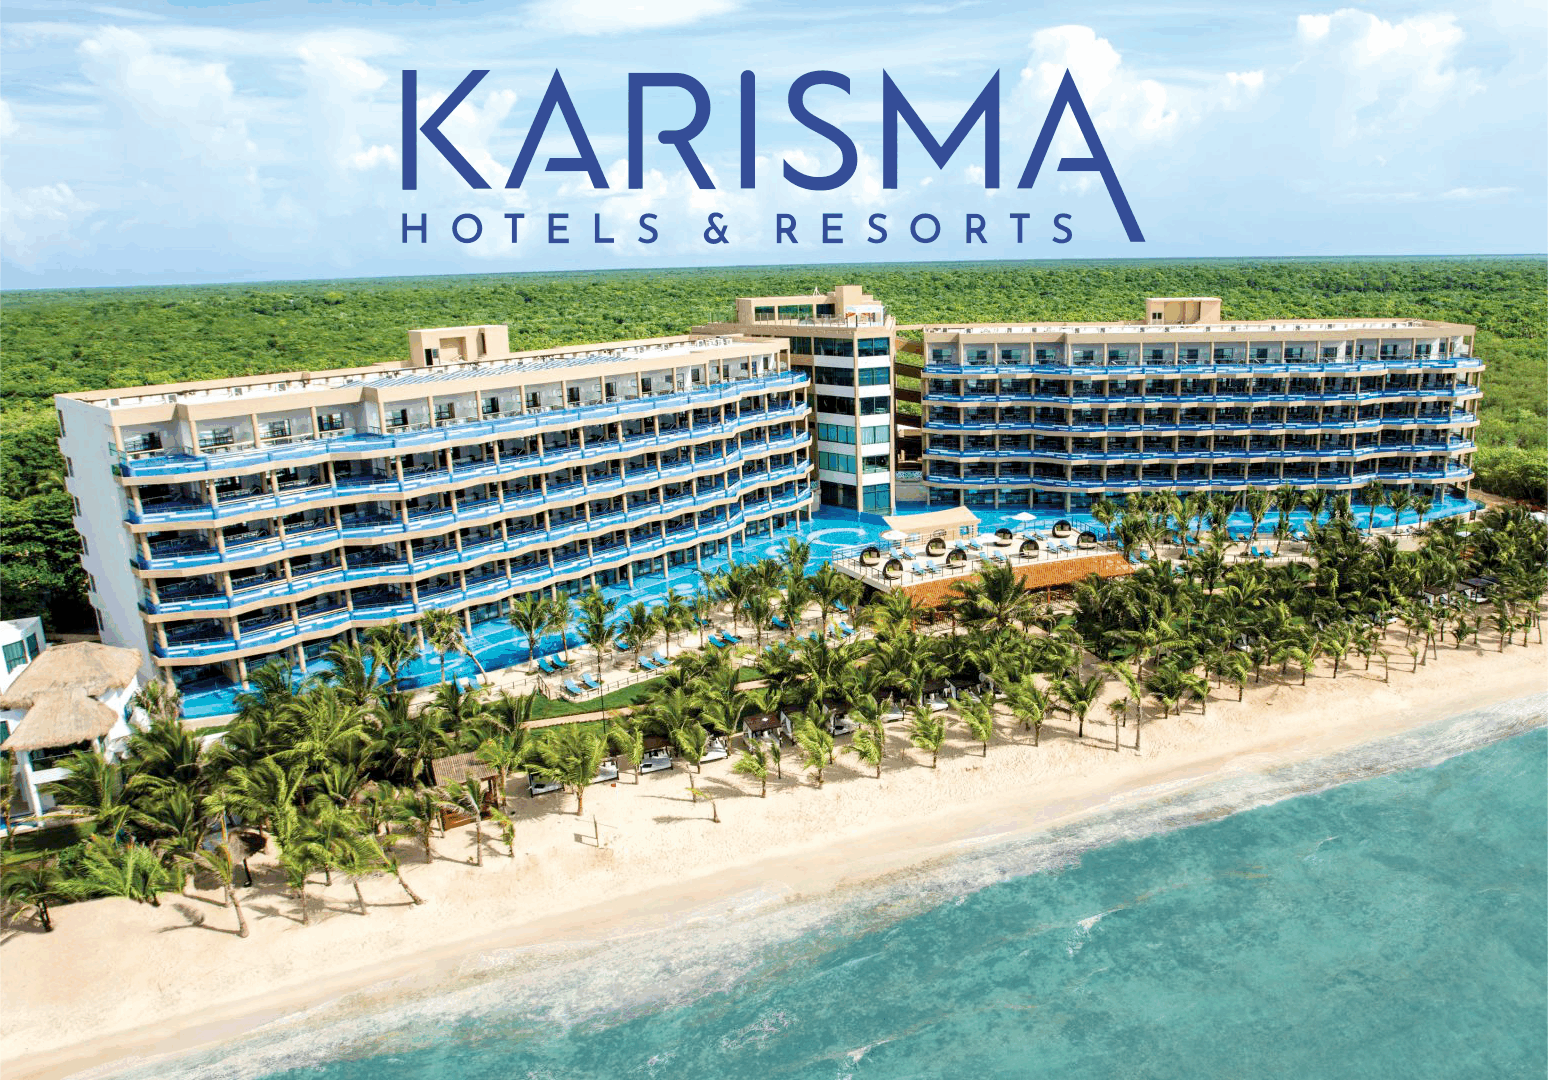 Karisma Hotels & Resorts implementó un sistema de Gestión Colaborativa para seis unidades de negocio con Bitrix24